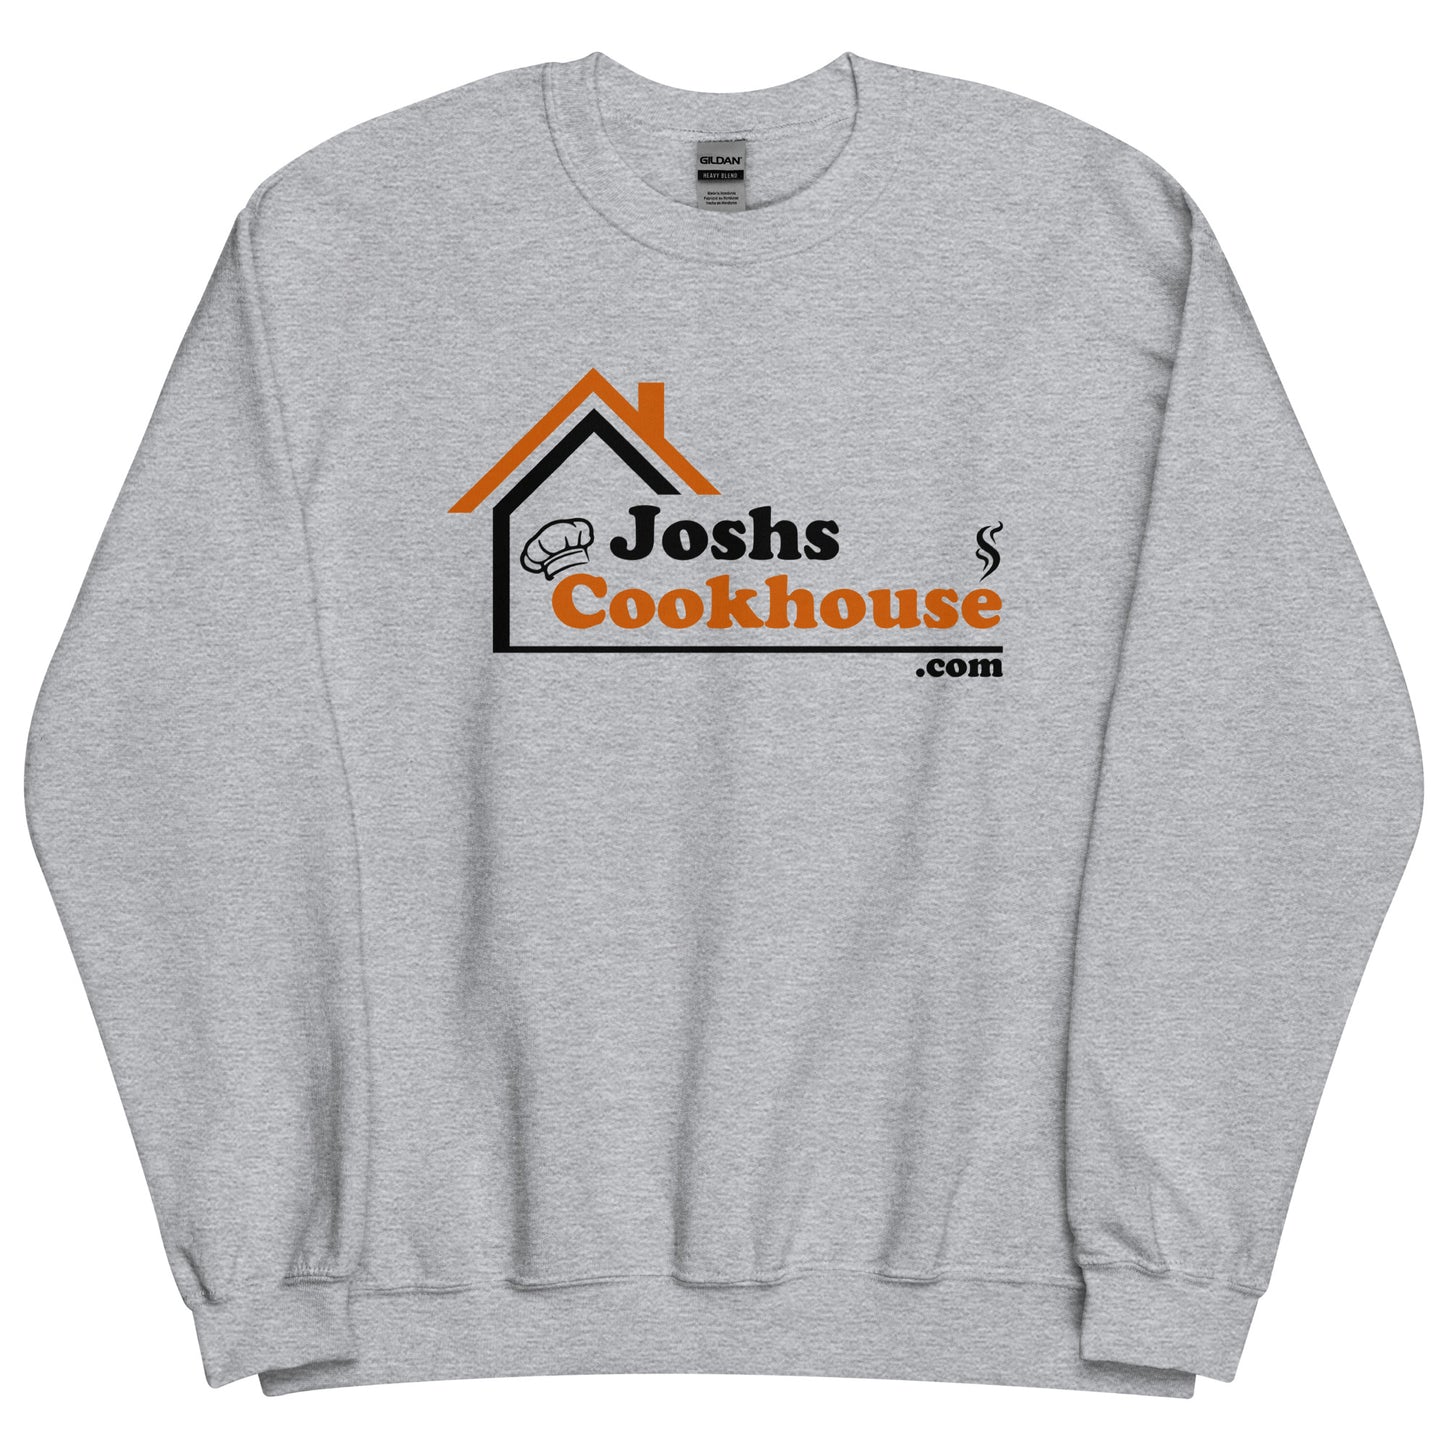 Joshs Cookhouse Crew Neck